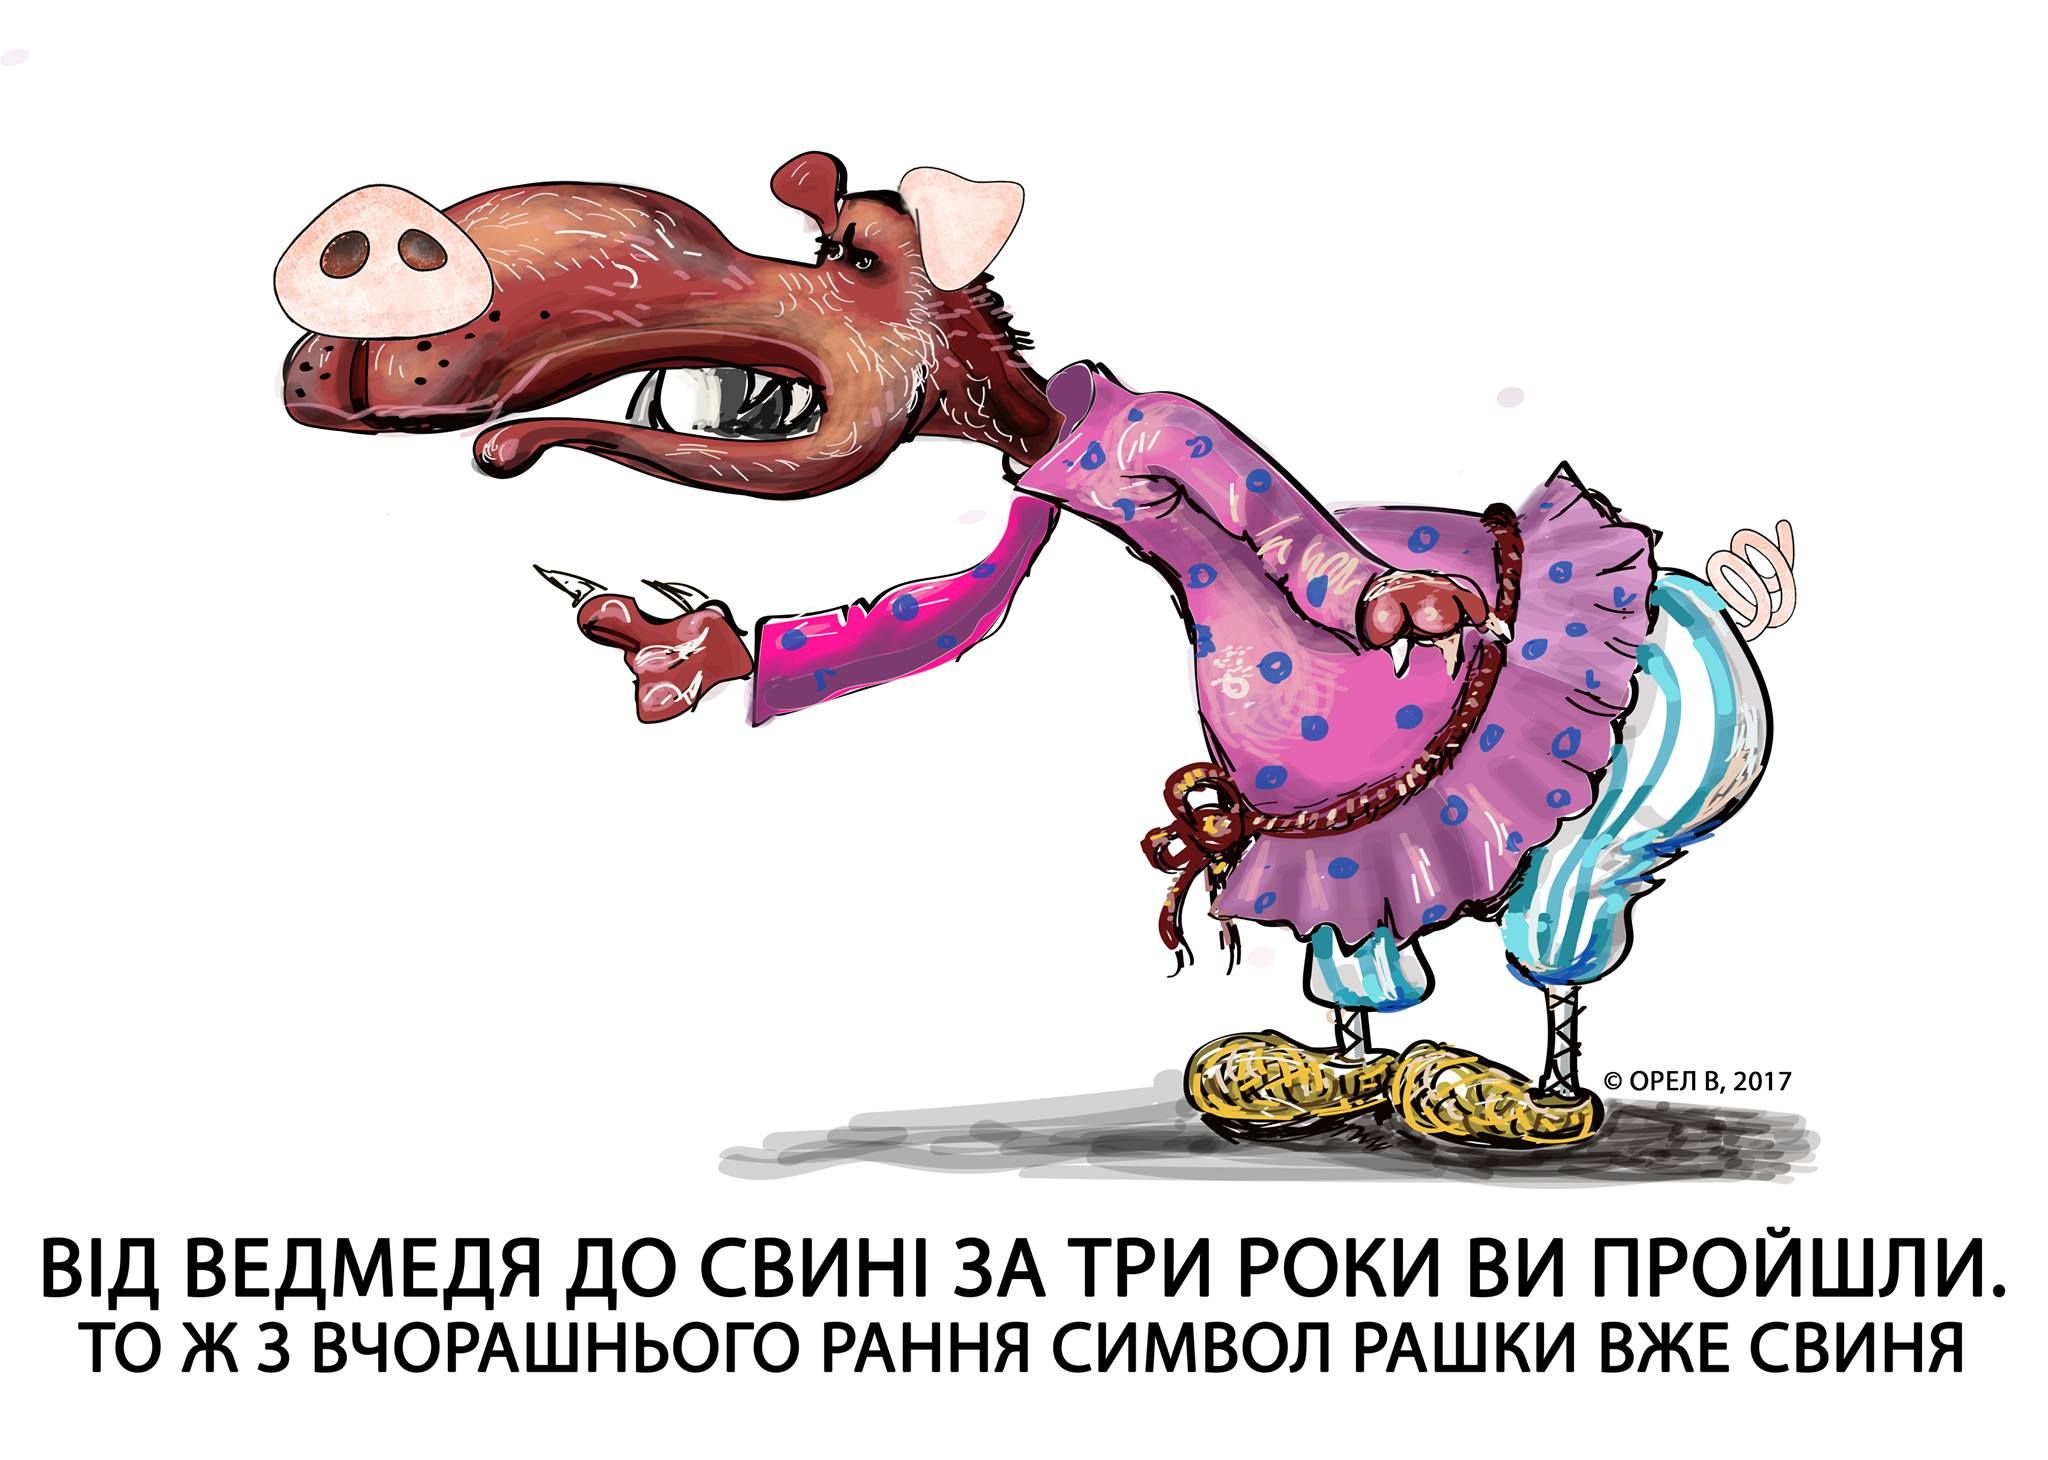 Посмейтесь немного: украинский карикатурист остроумно высмеял лидера боевиков